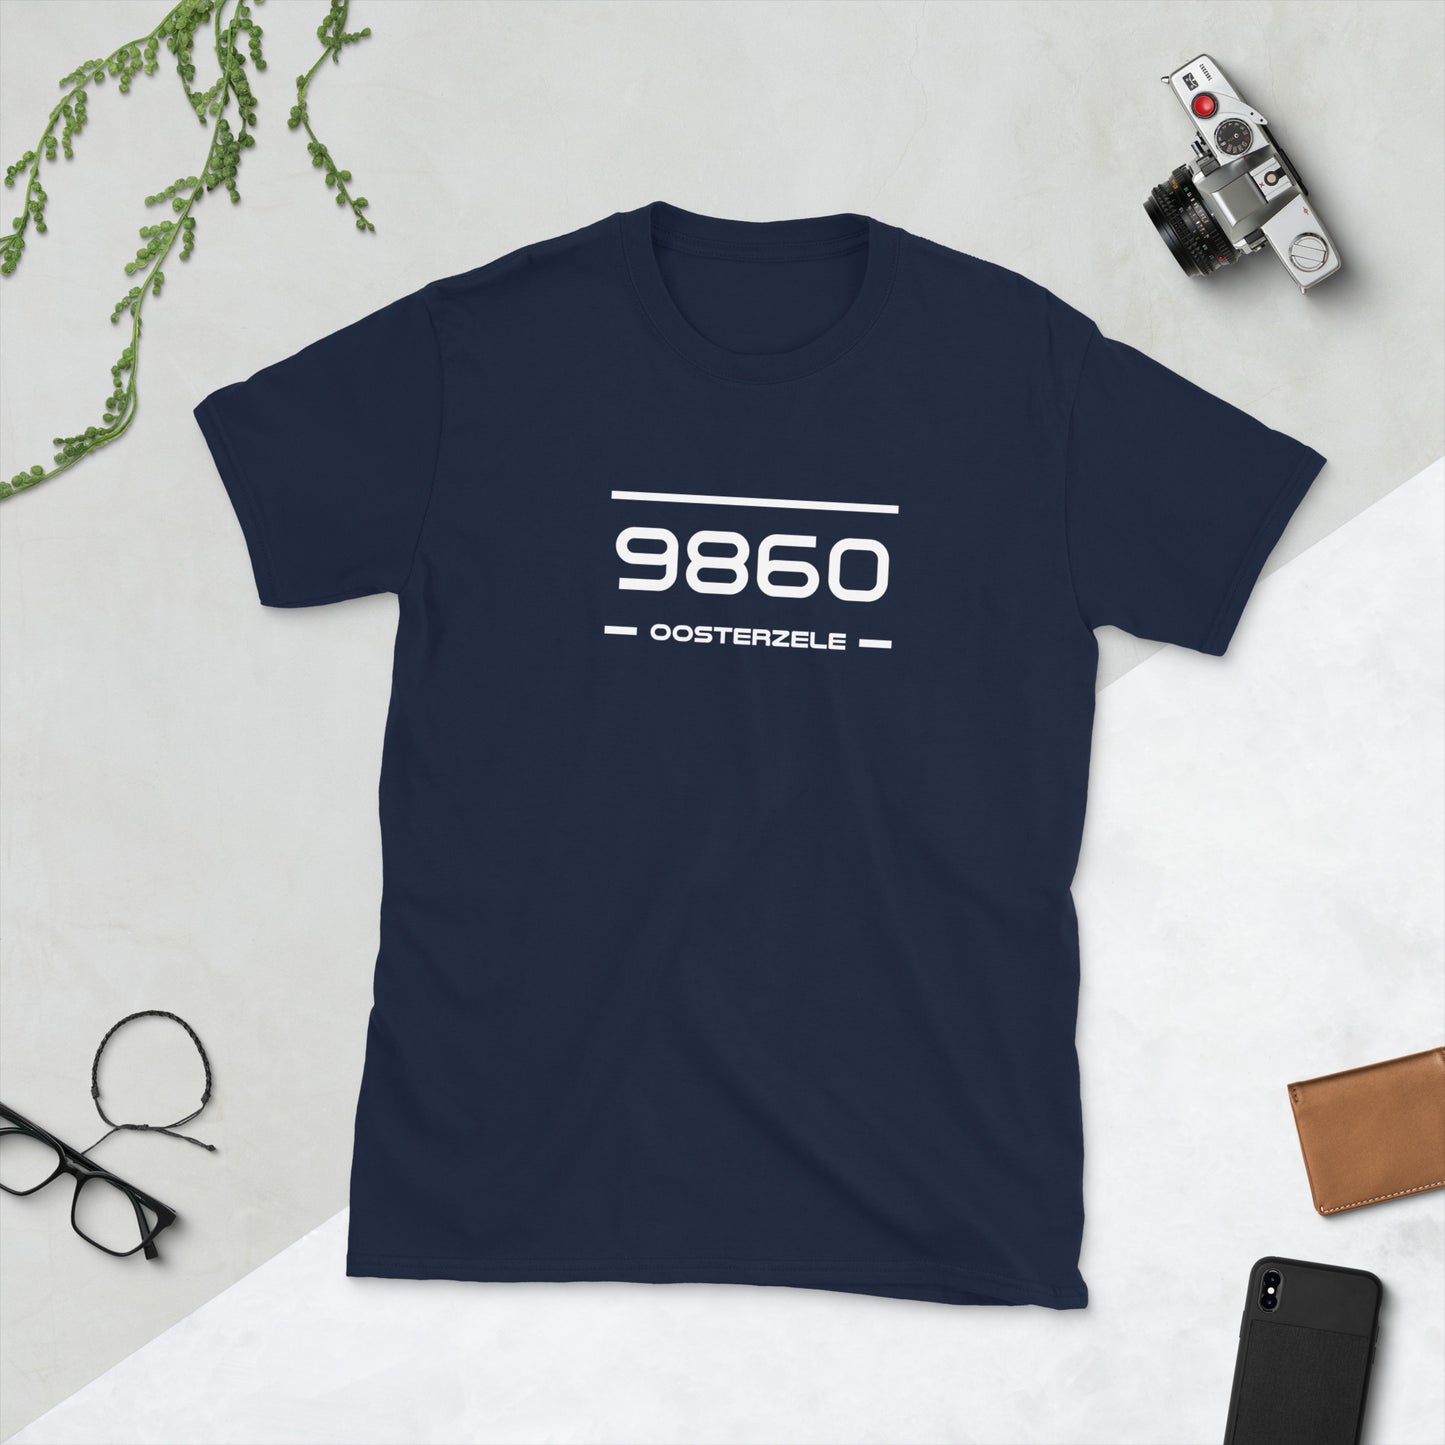 Tshirt - 9860 - Oosterzele